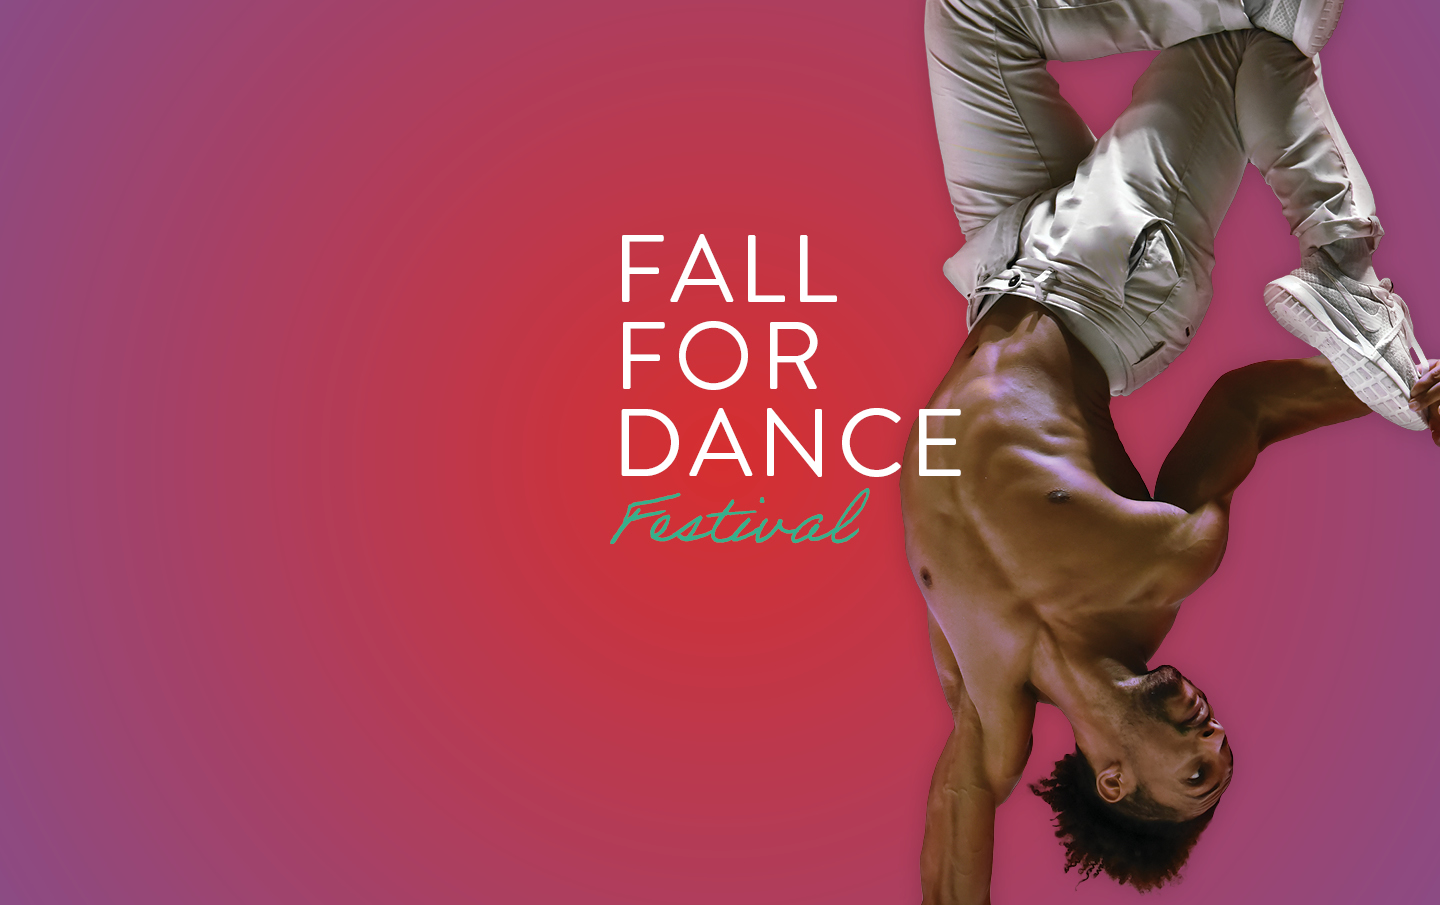 Fall for Dance Festival